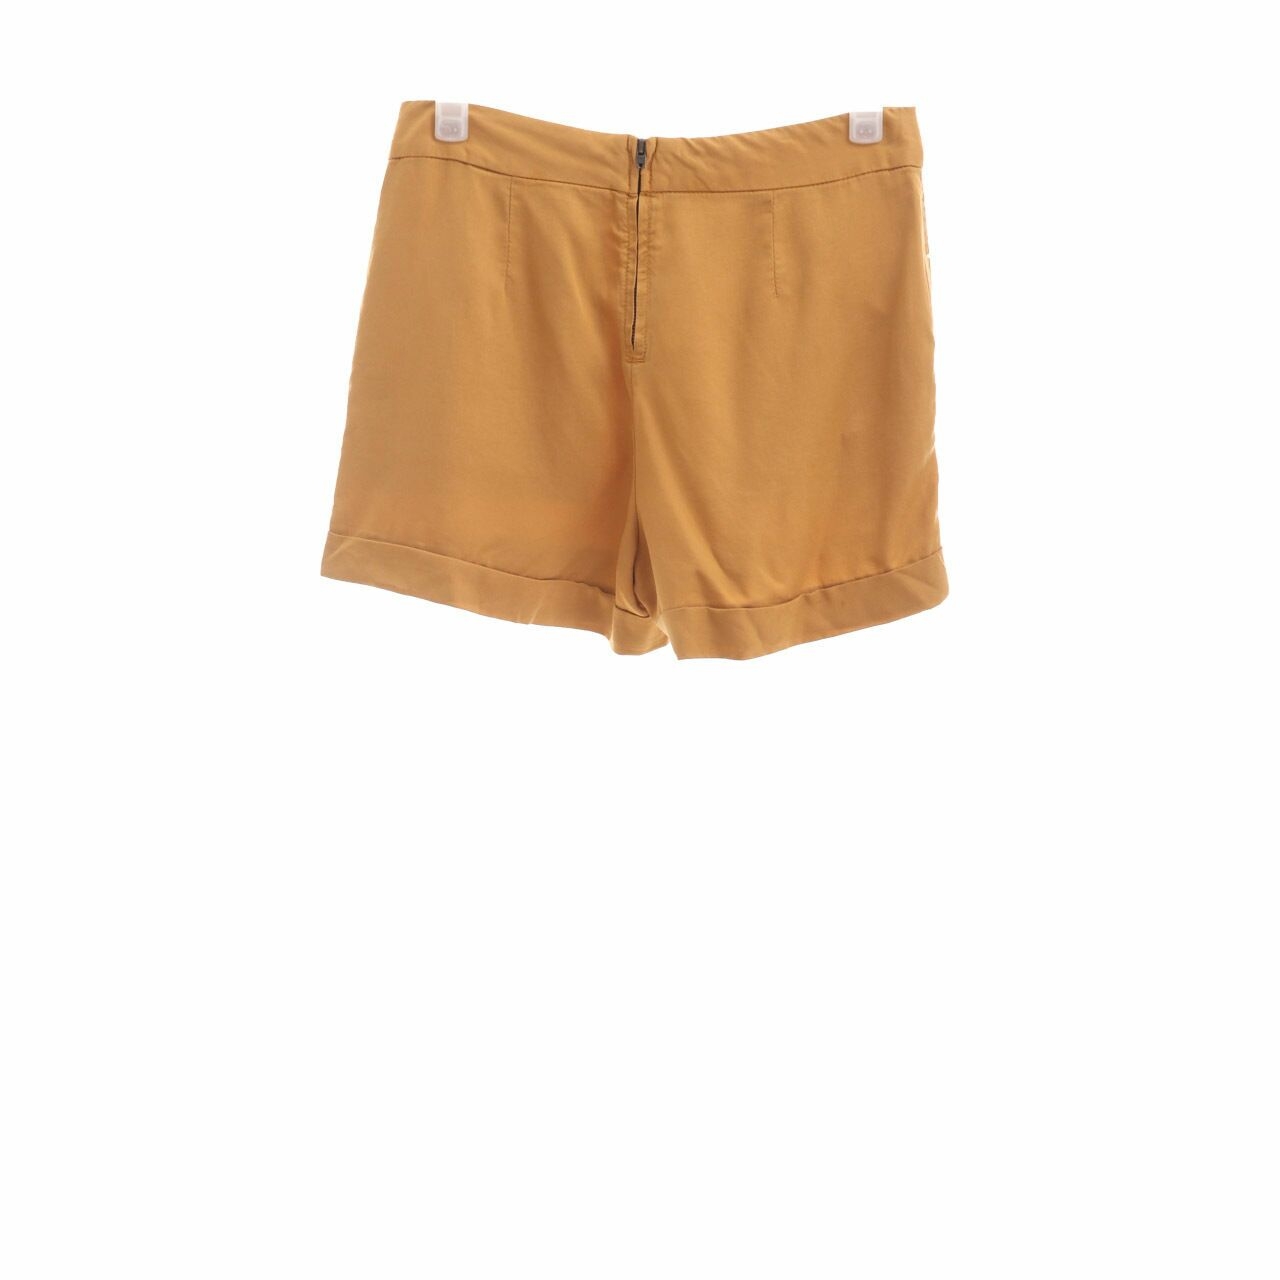 Zara Mustard Short Pants